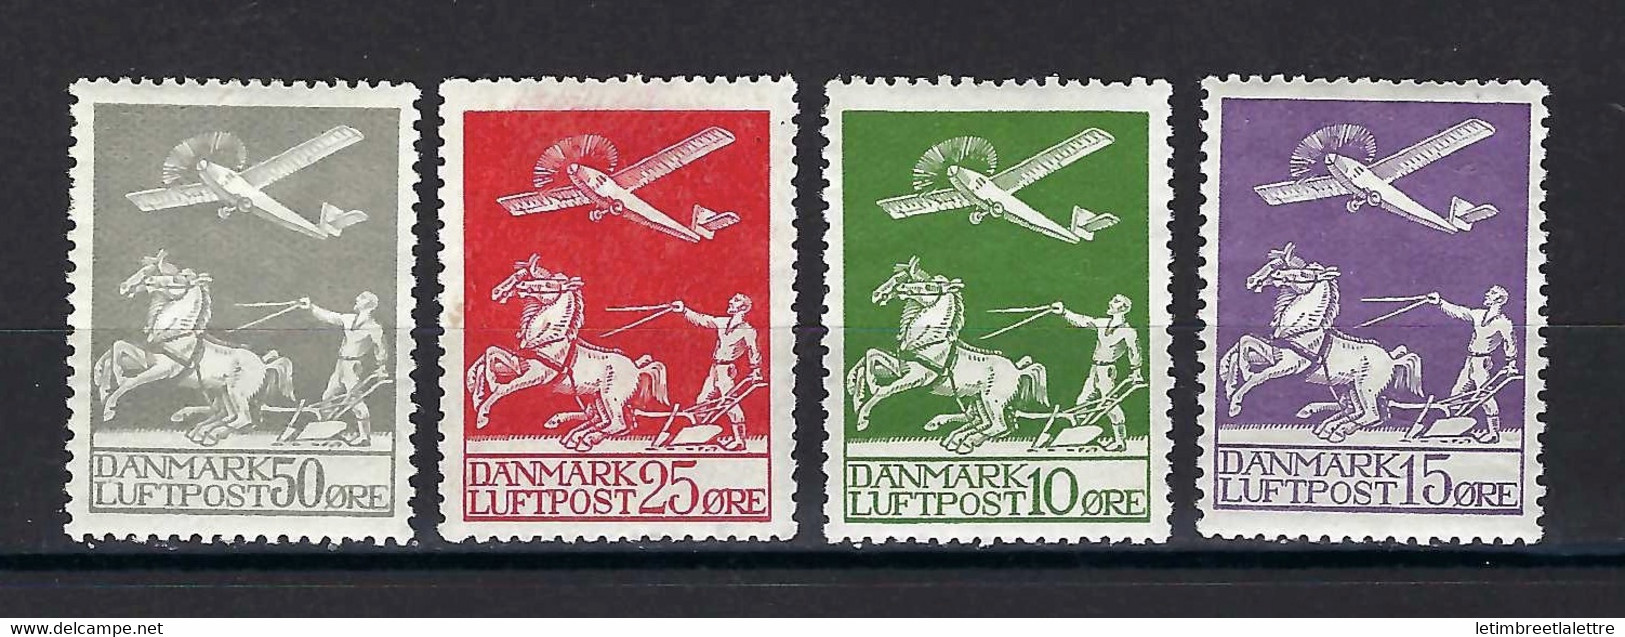 ⭐ Danemark - Poste Aérienne - YT N° 1 à 4 *  - Neuf Avec Charnière - 1925 / 1930 ⭐ - Poste Aérienne